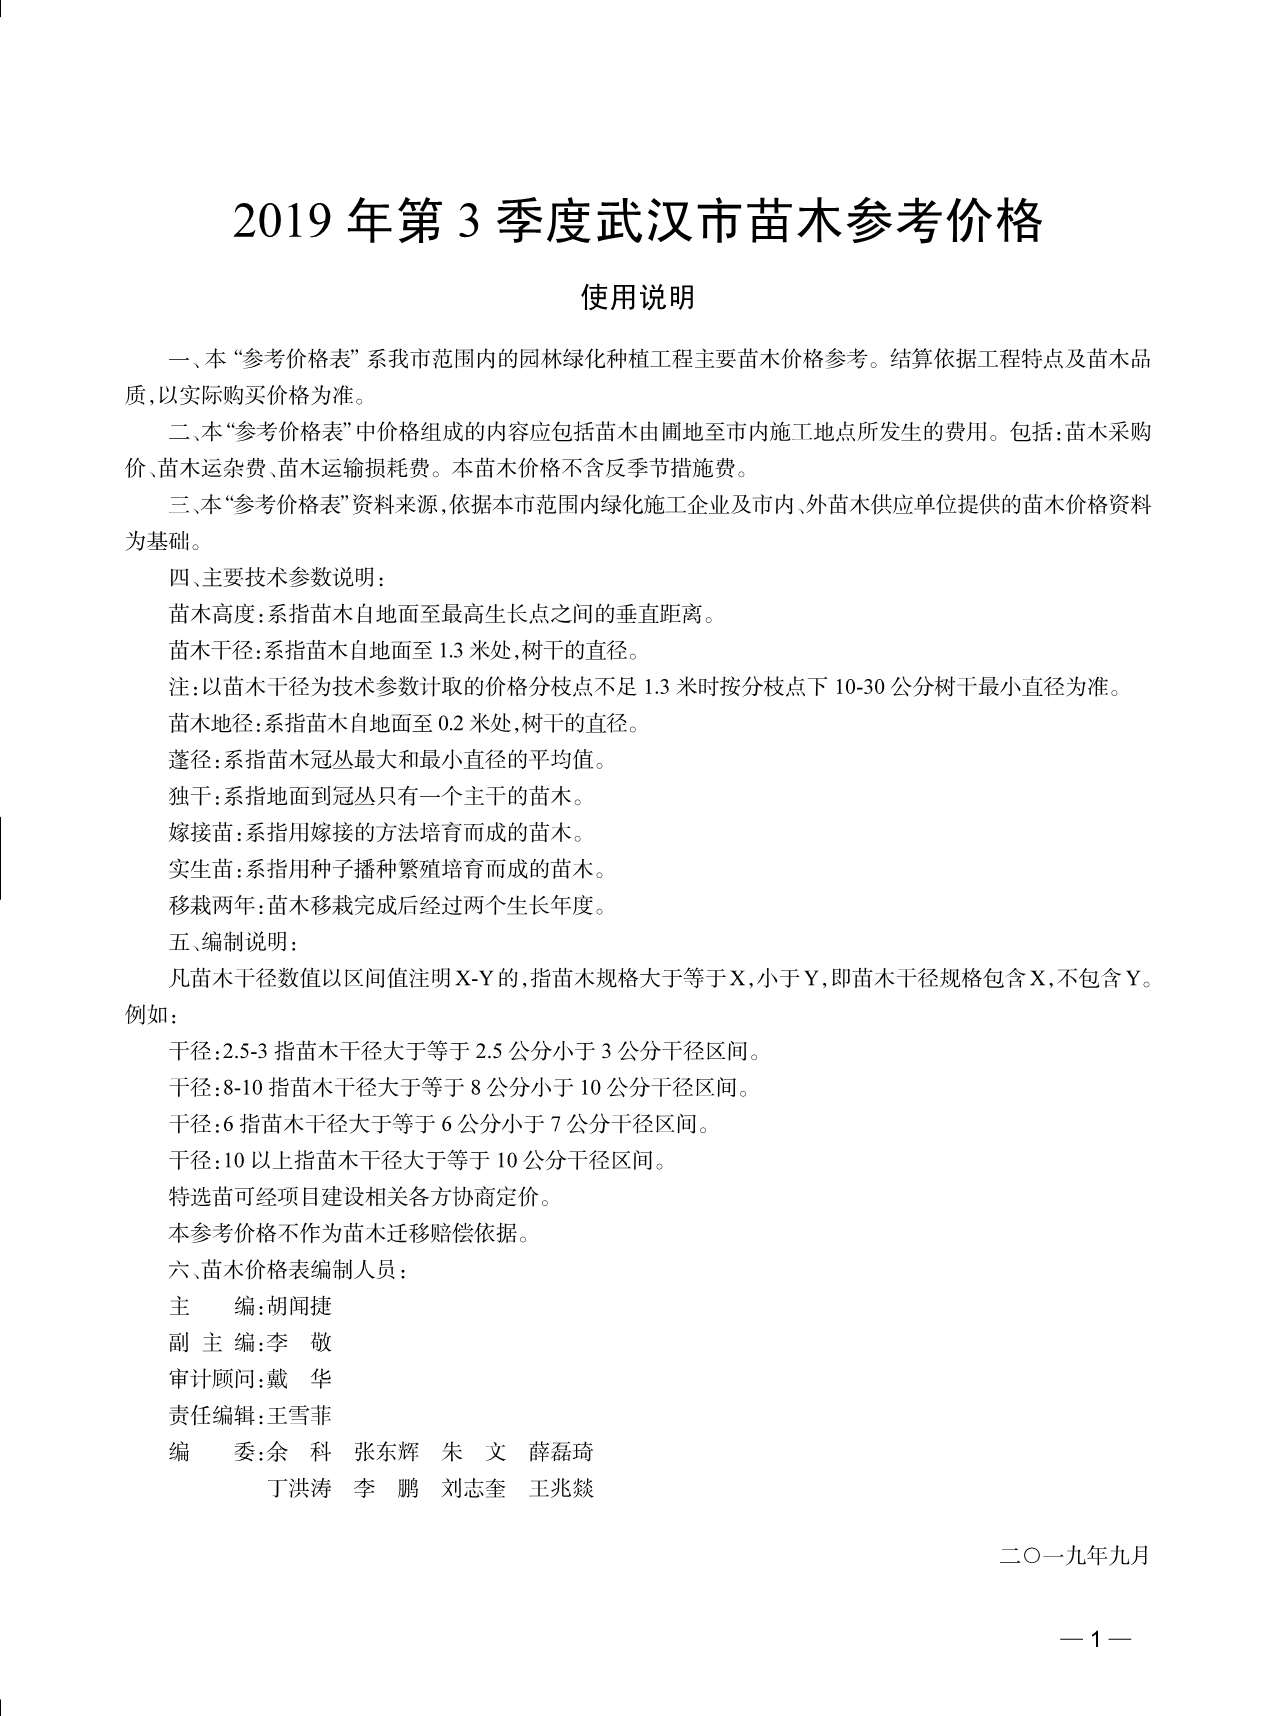 武汉市2019年3月园林信息价